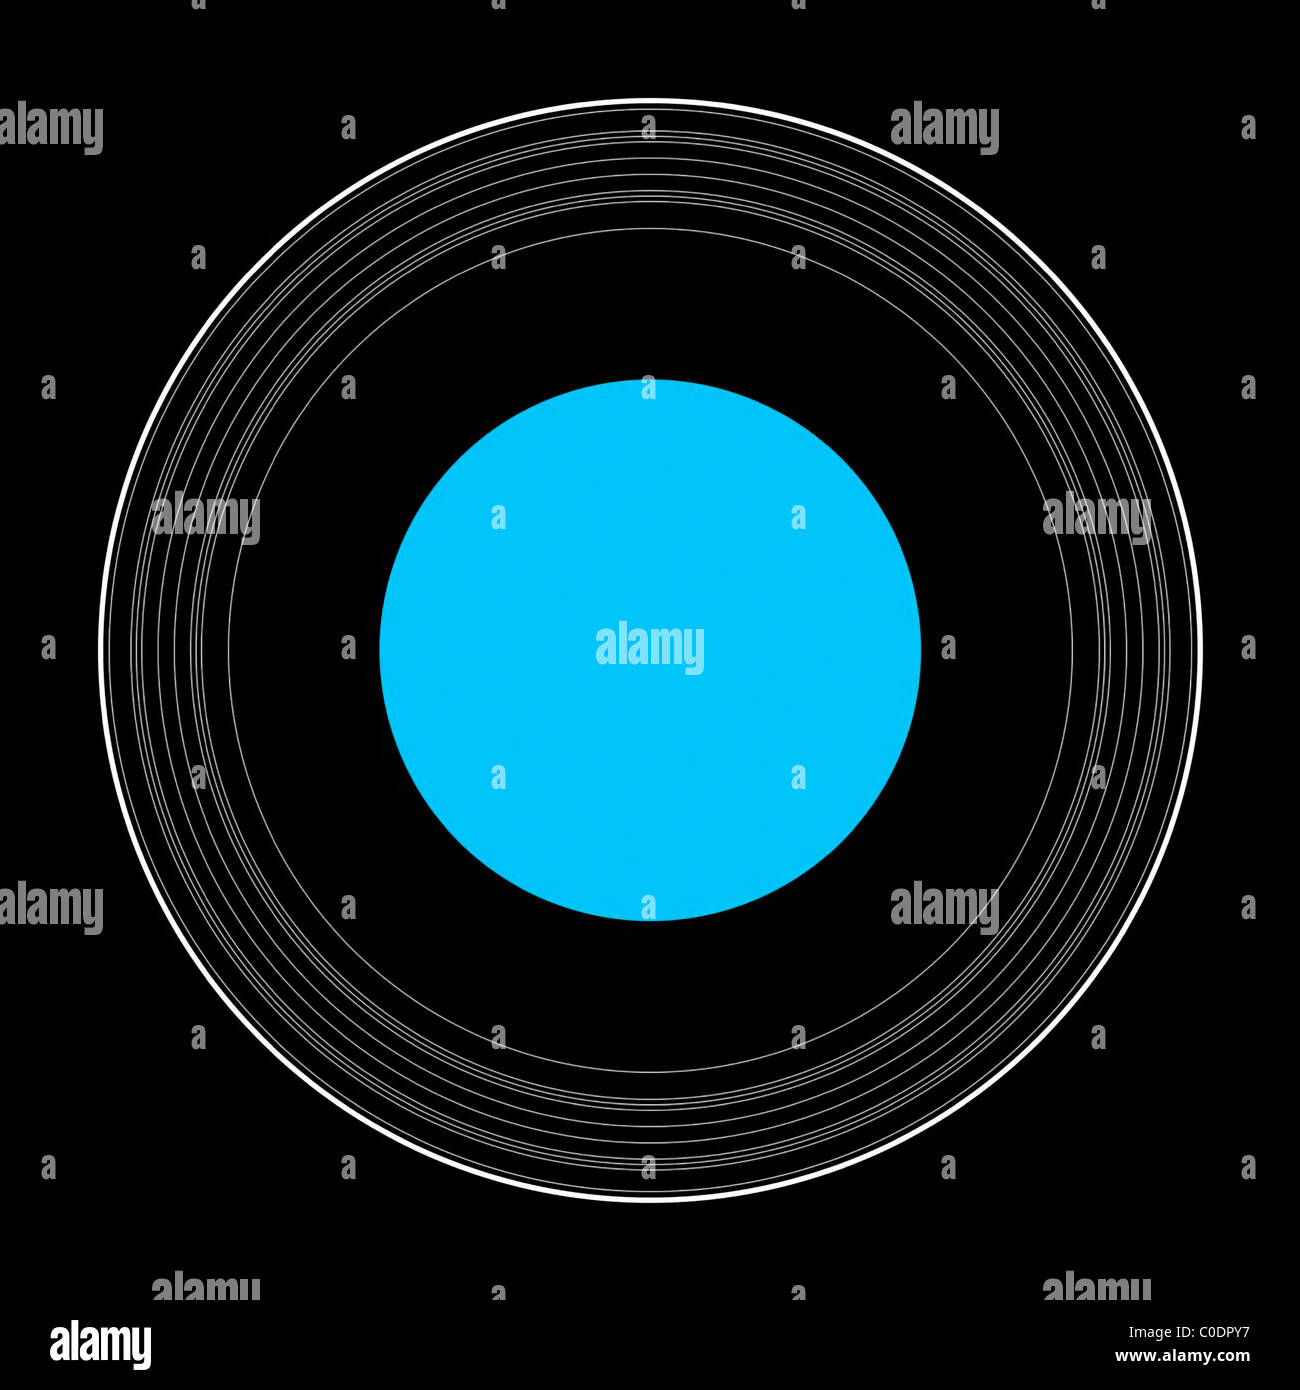 Urano con i suoi anelli immagini e fotografie stock ad alta risoluzione -  Alamy